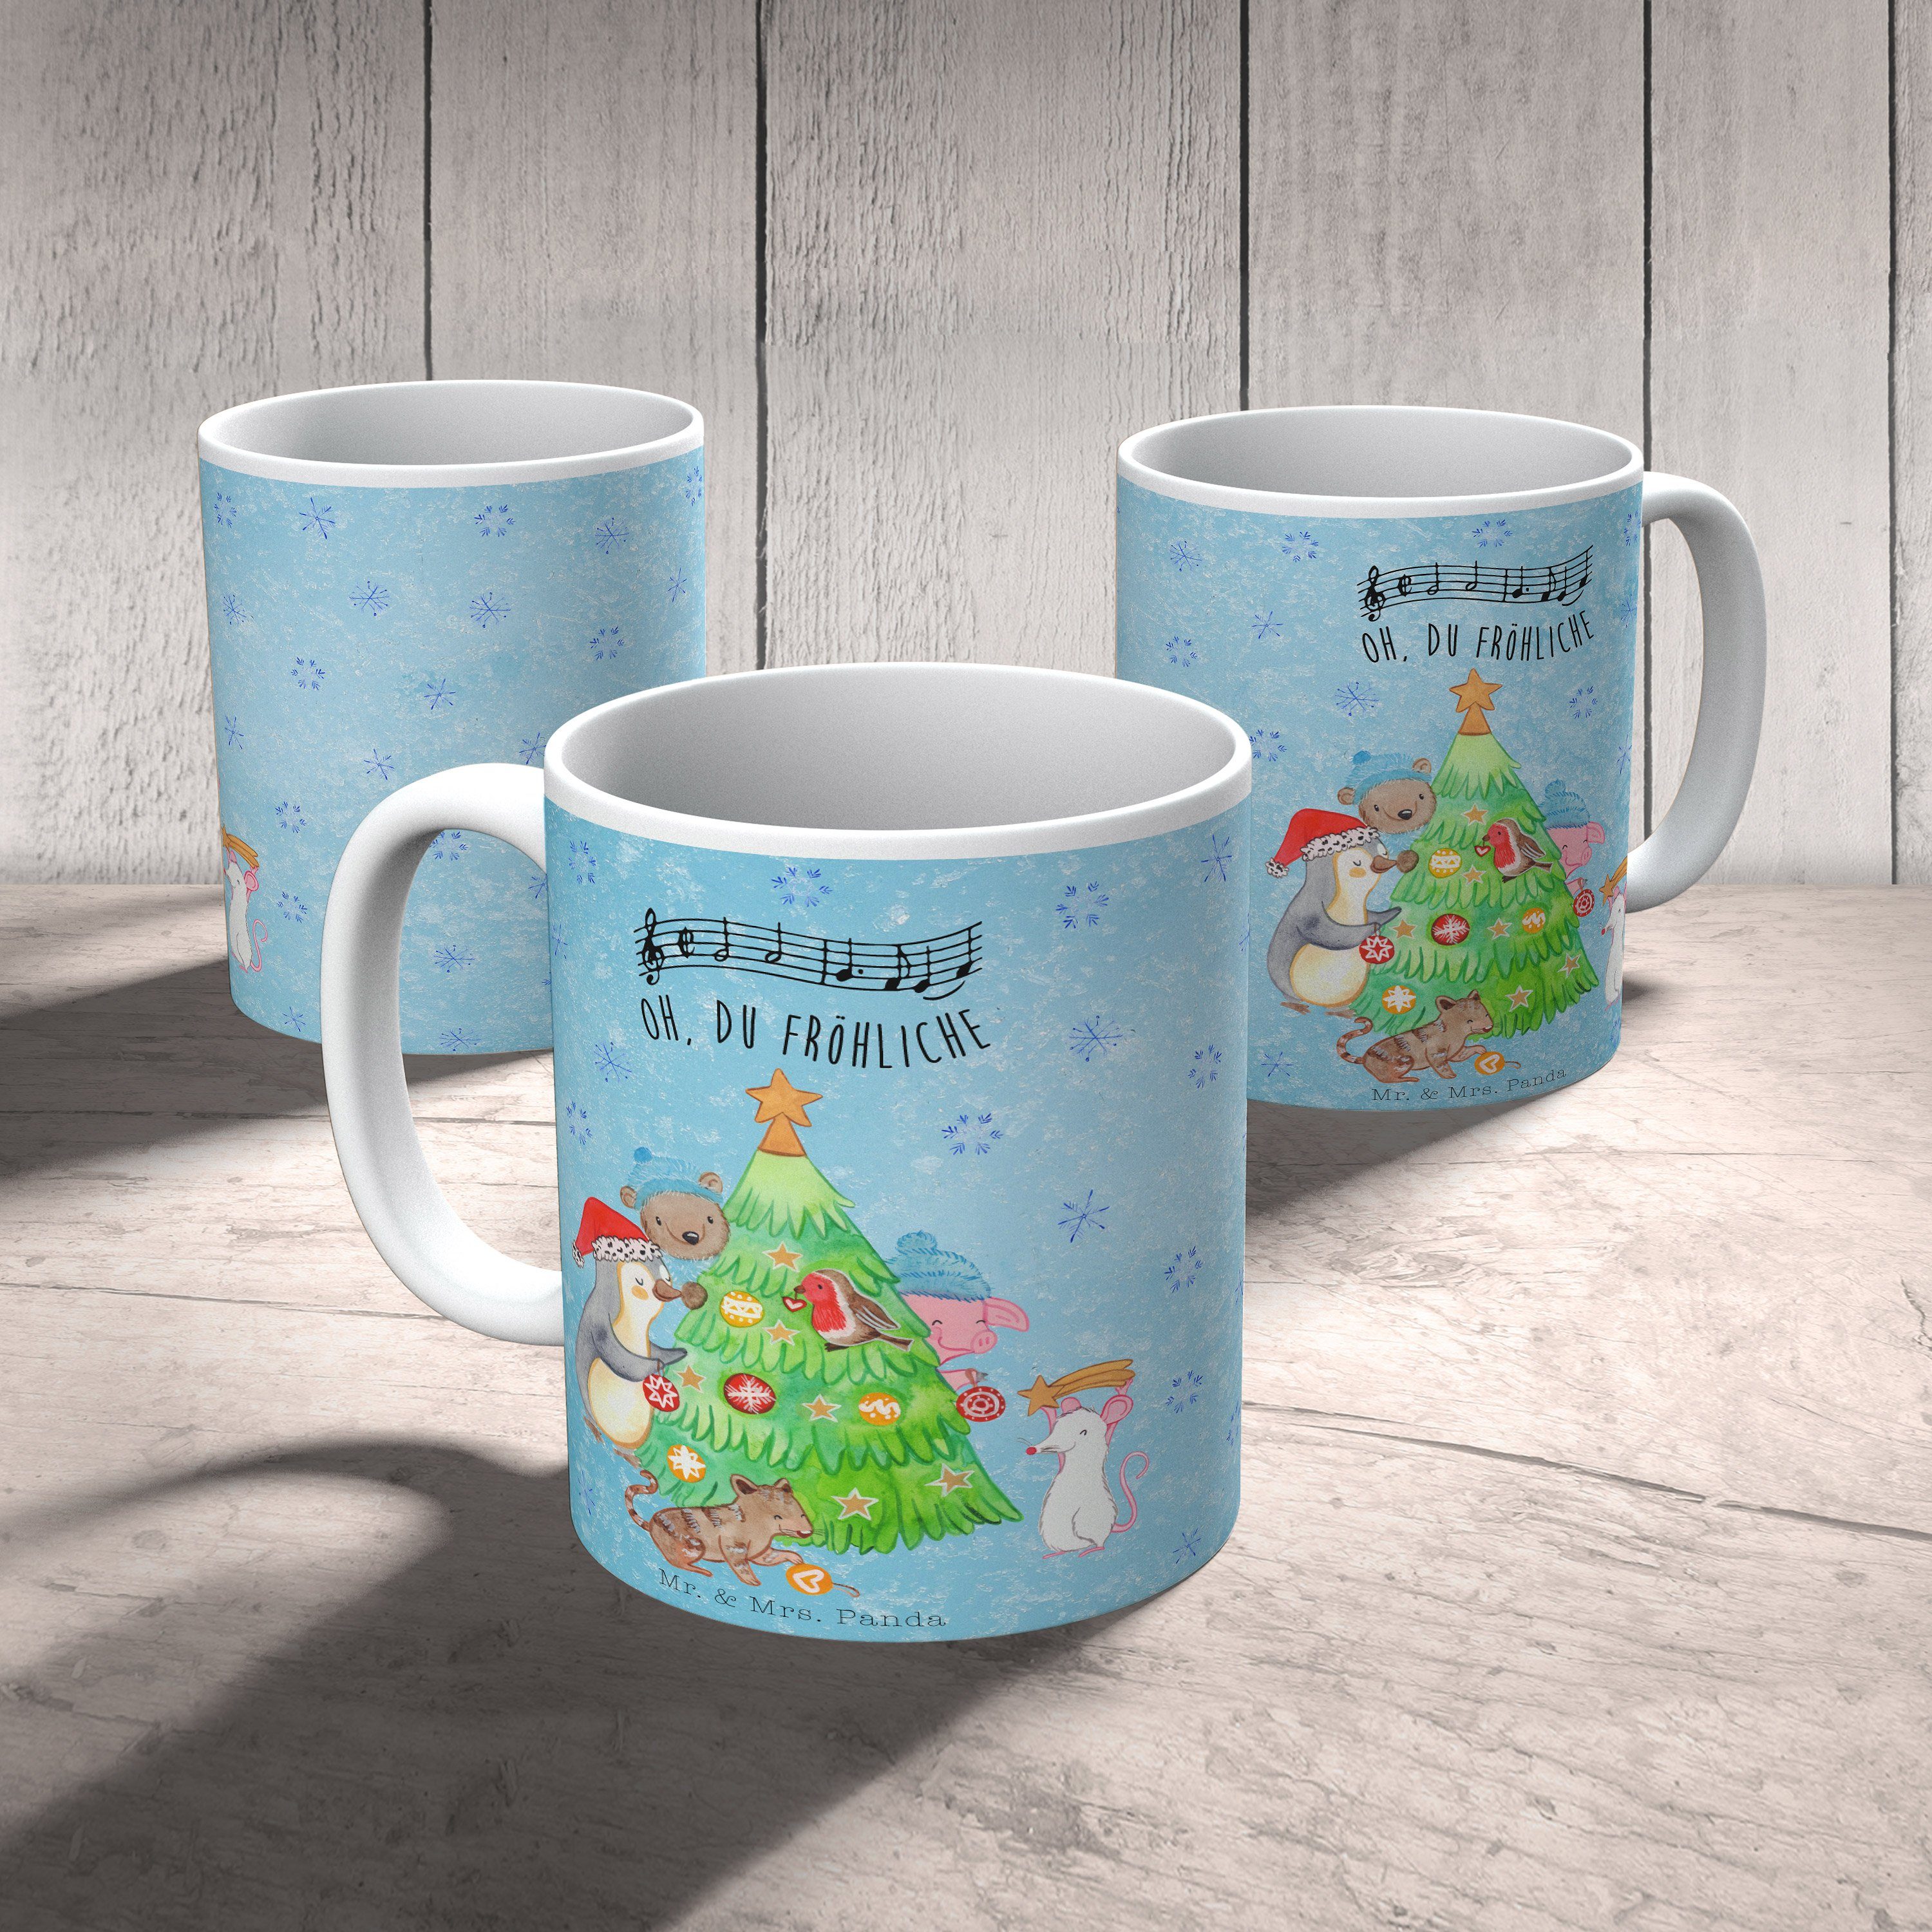 Mr. schmücken & Tasse Panda Weihnachtsbaum Eisblau Keramik Kaffeetasse, Advent, H, Mrs. Geschenk, - -